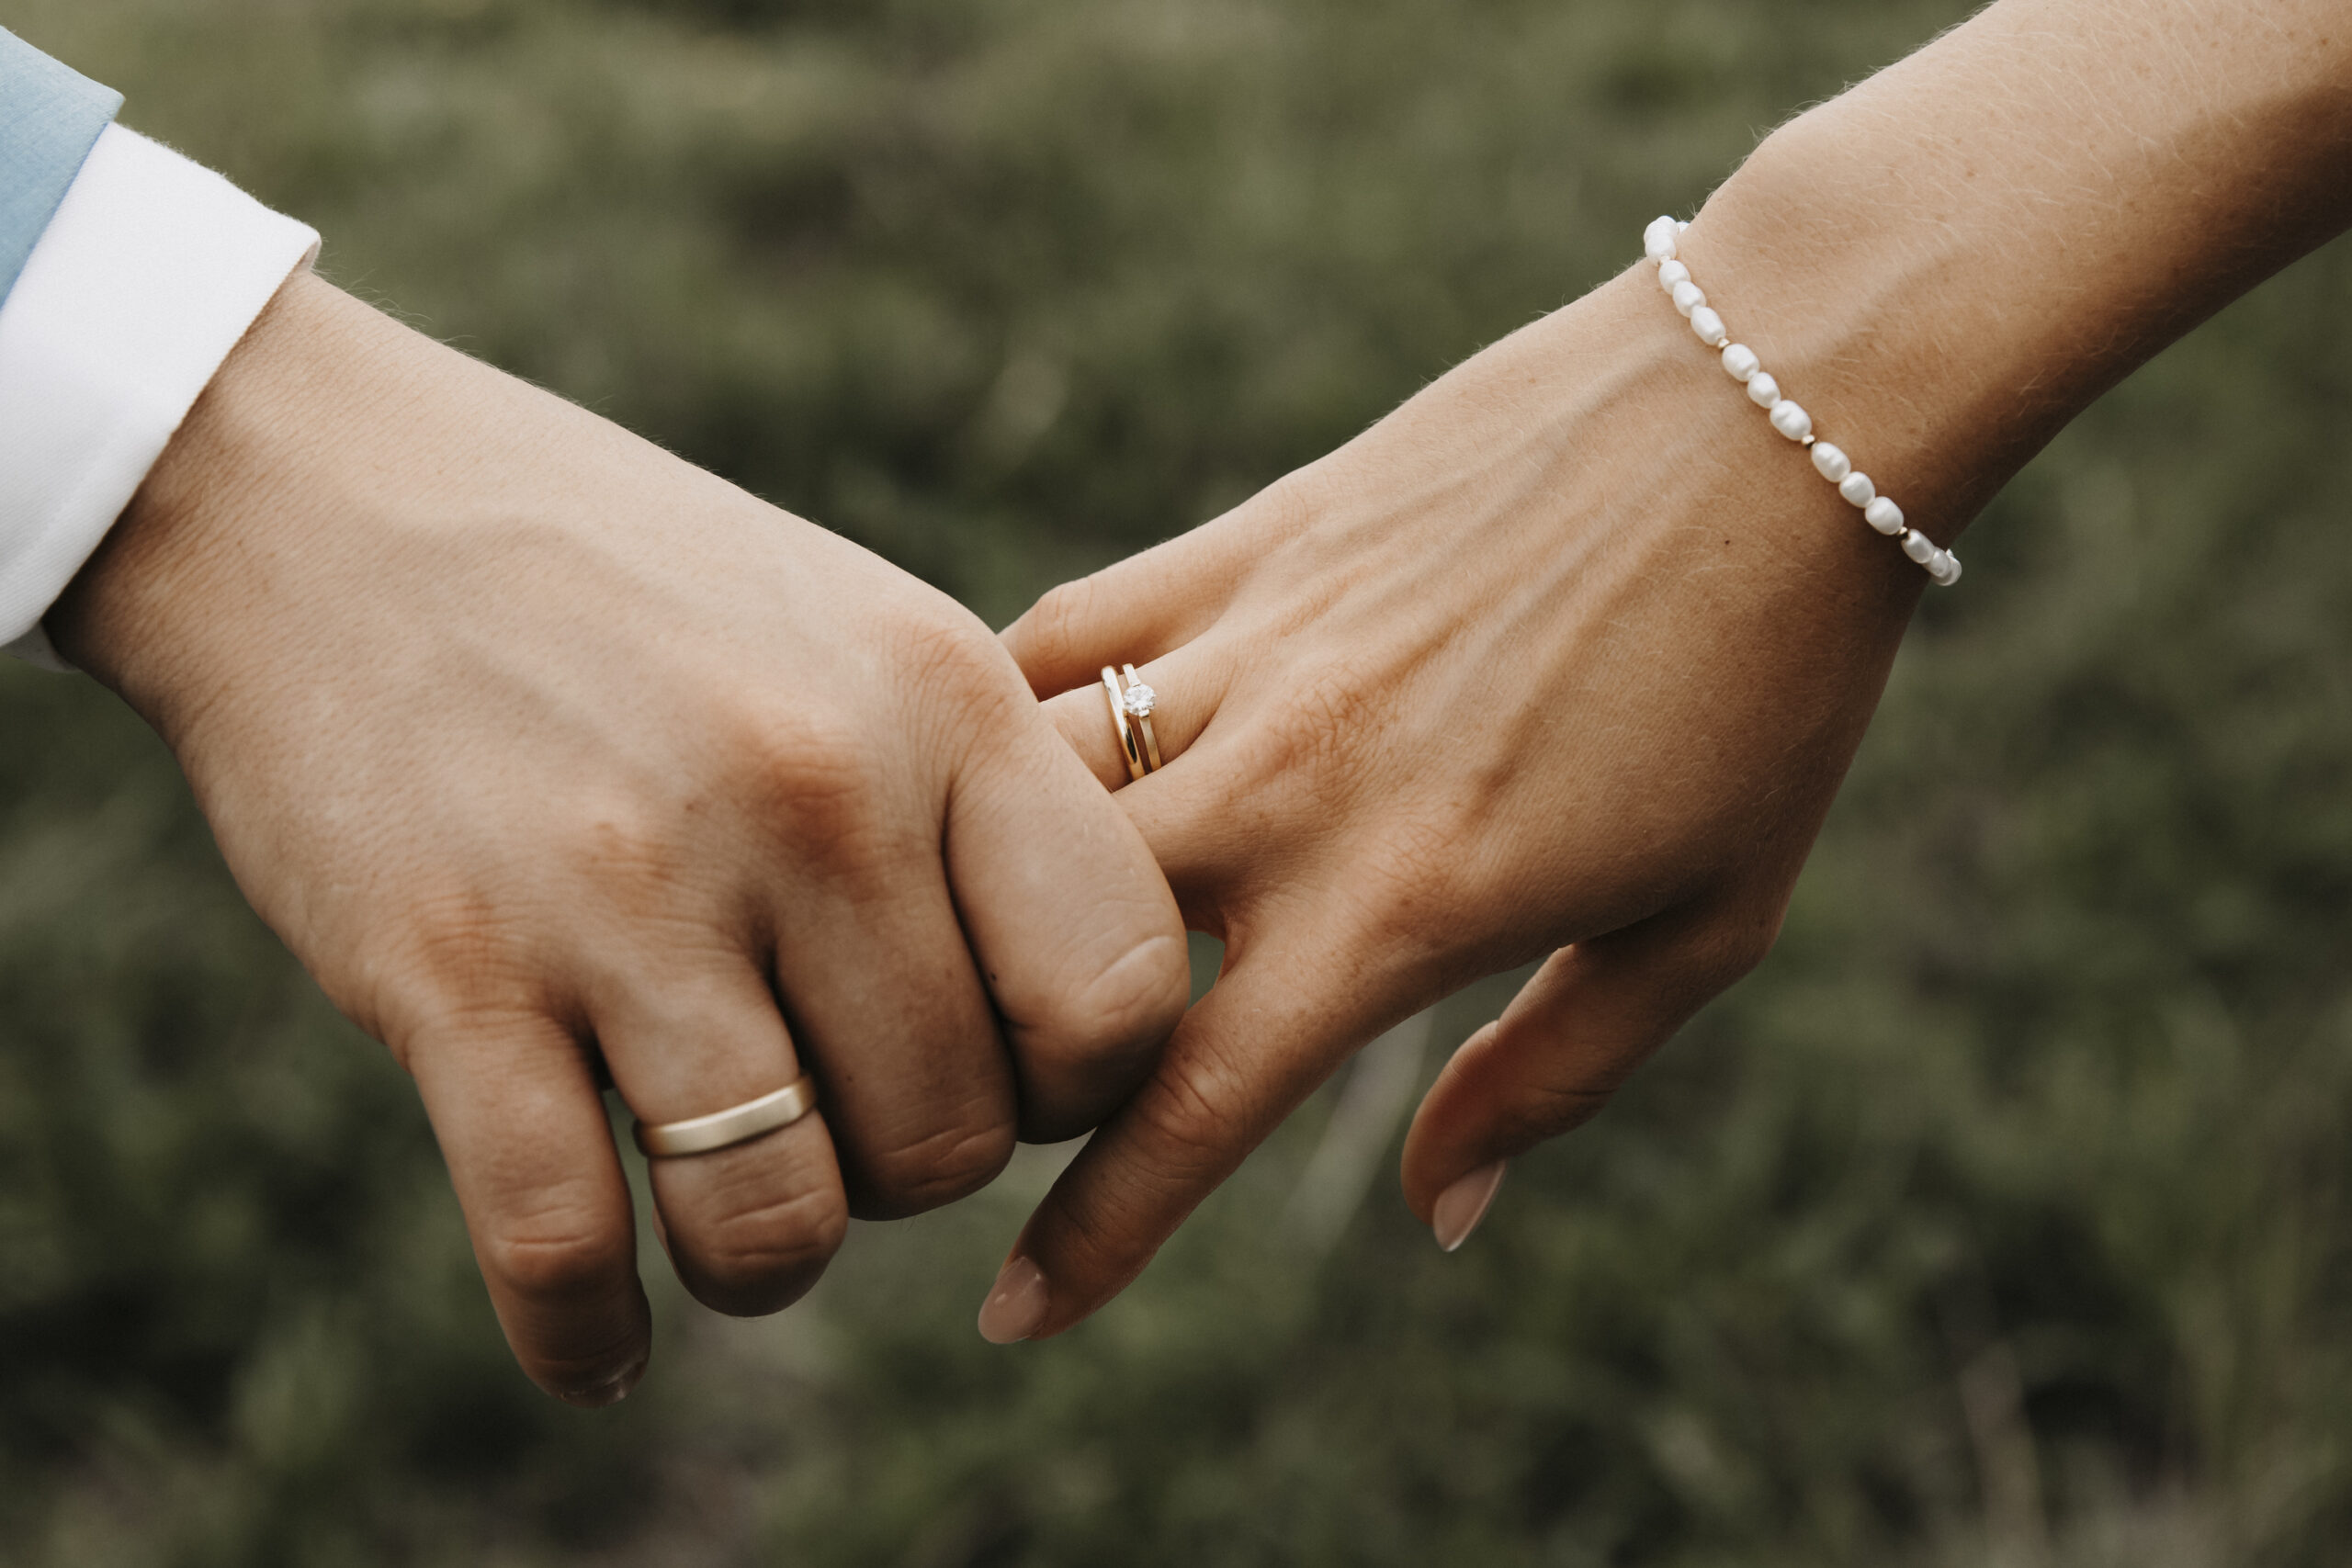 Nahaufnahme der Hände des Brautpaares, sie halten sich fest gegenseitig und zeigen damit ihr Zeichen der Verbundenheit